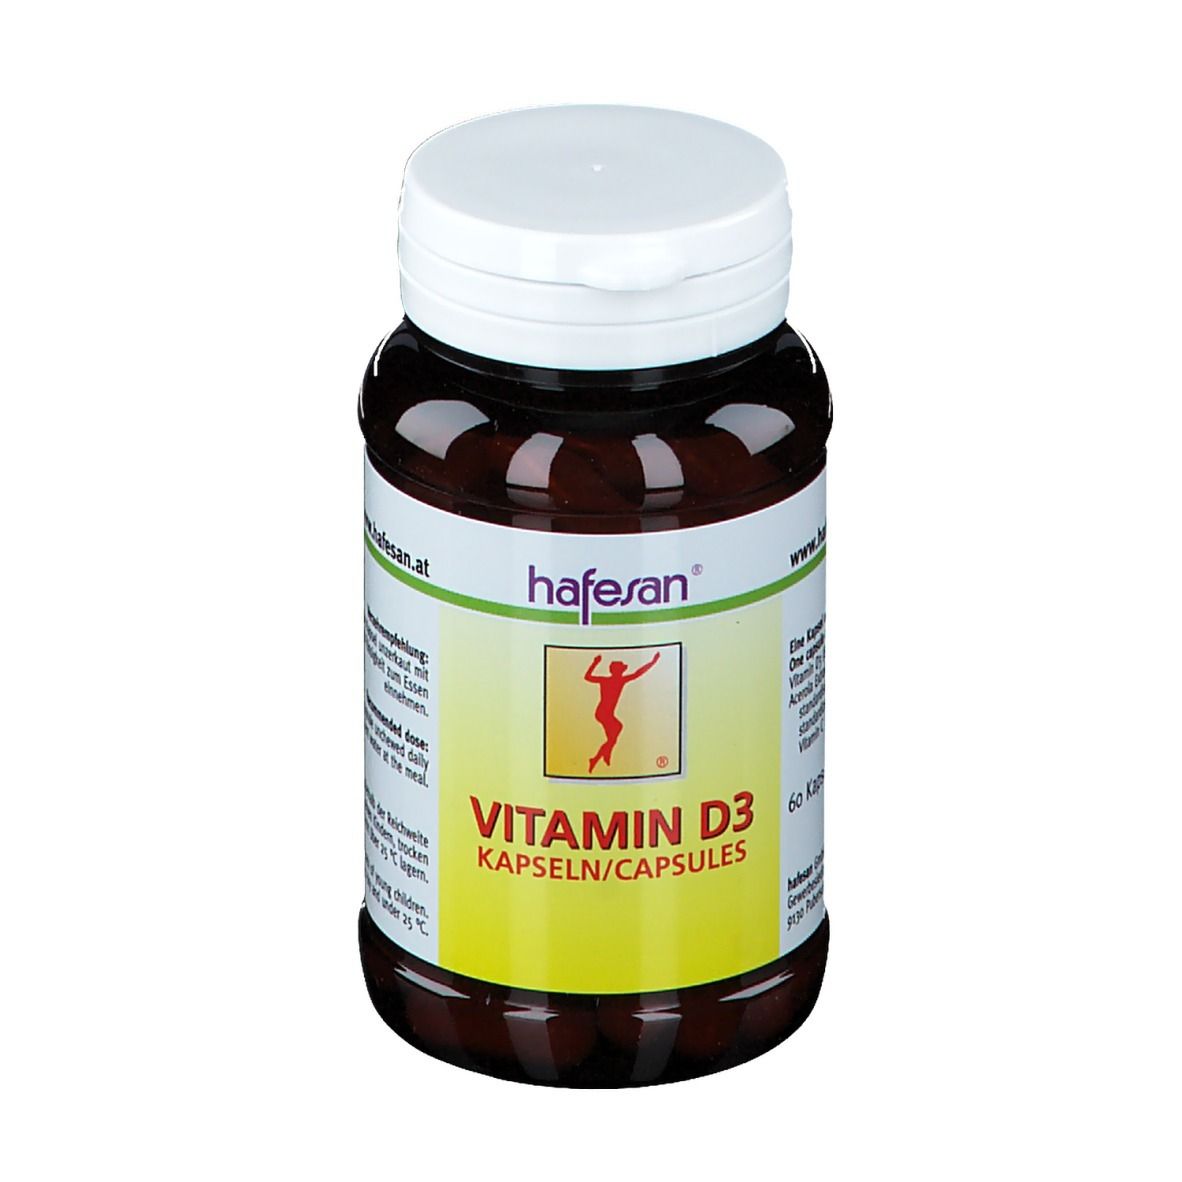 hafesan® Vitamin D3